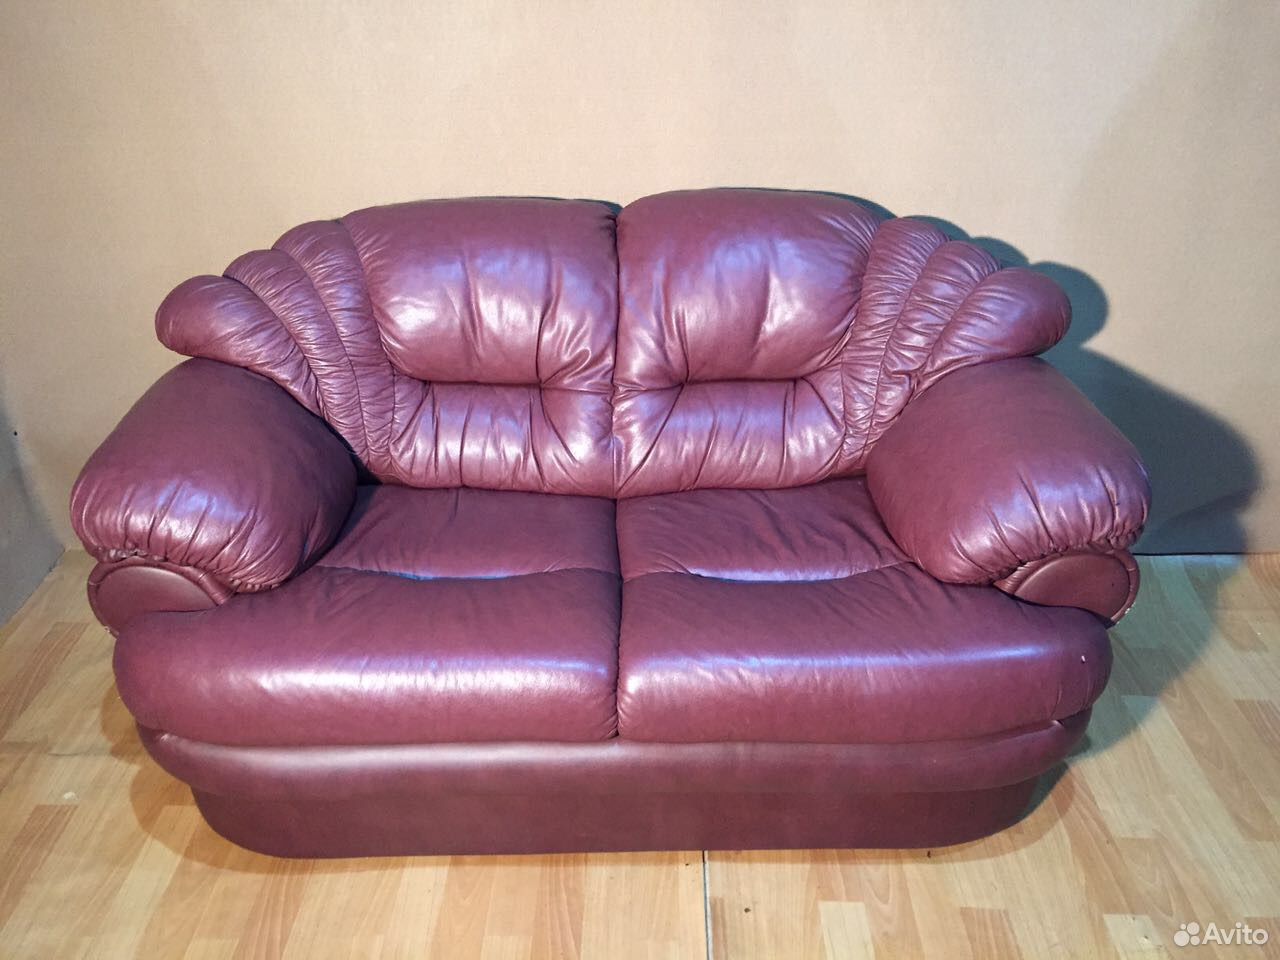 Куплю кожаный диван б у. Финская кожаная мебель. Старый кожаный диван. Старые кожаные диваны даром. Финские кожаные диваны.